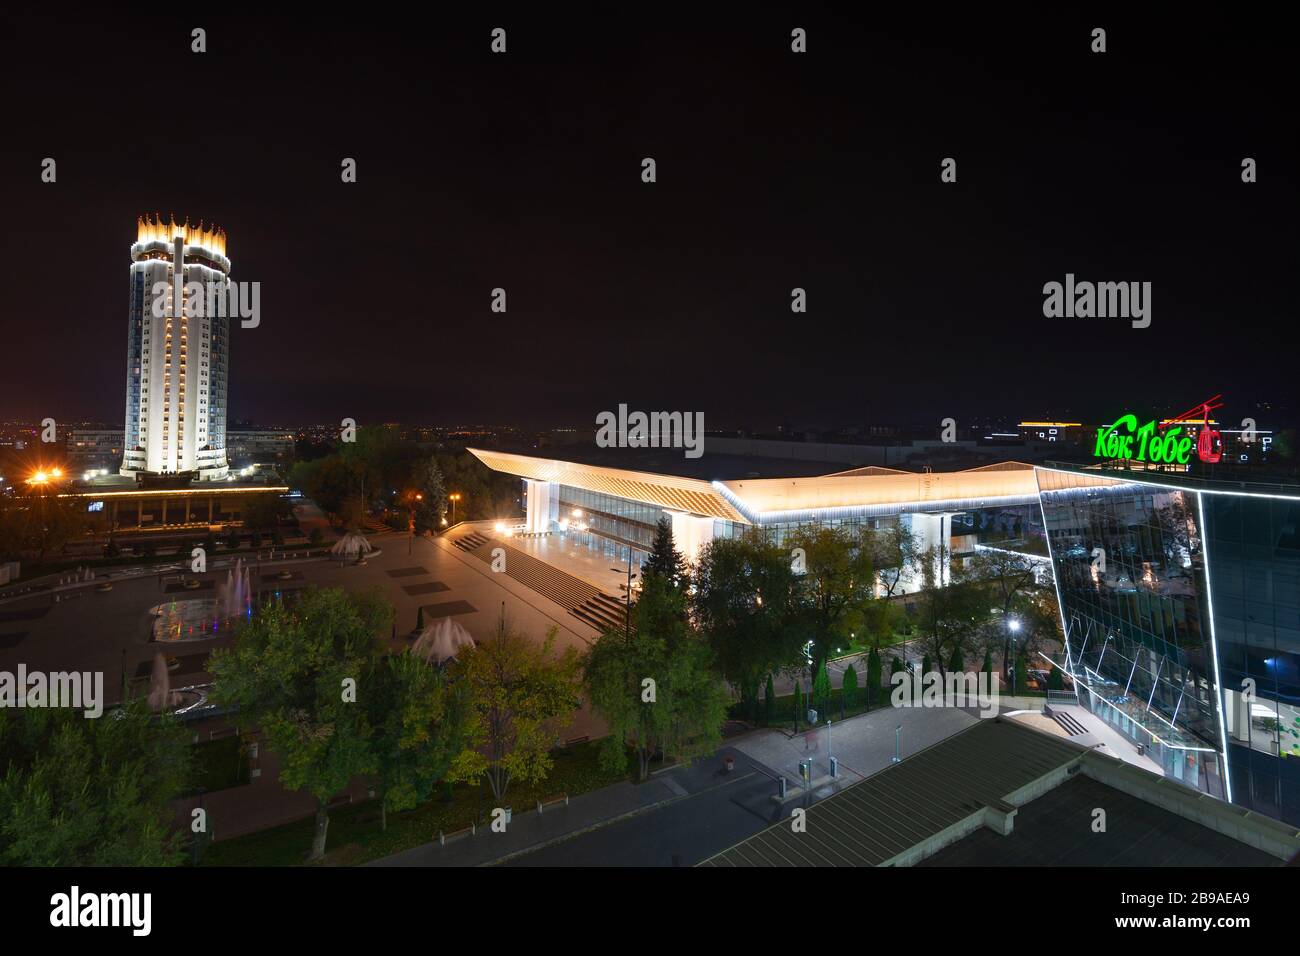 Abai-Platz, Almaty bei Nacht zeigt die moderne Kok Tobe Seilbahn Station, Palast der Republik Konzerthalle und Hotel Kasachstan. Stockfoto